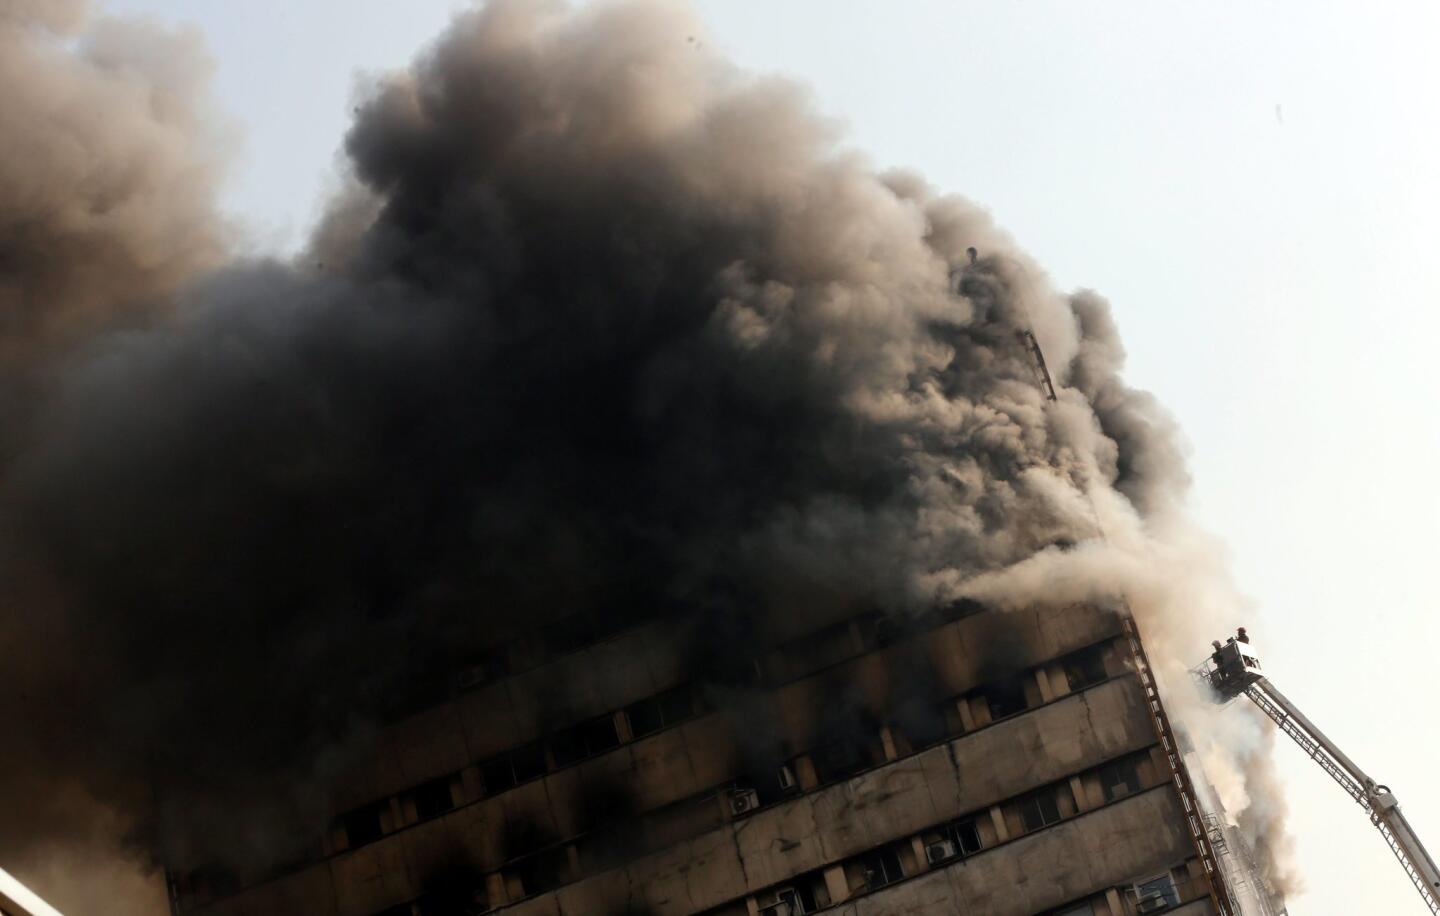 Plasco building burns, collapses in Tehran